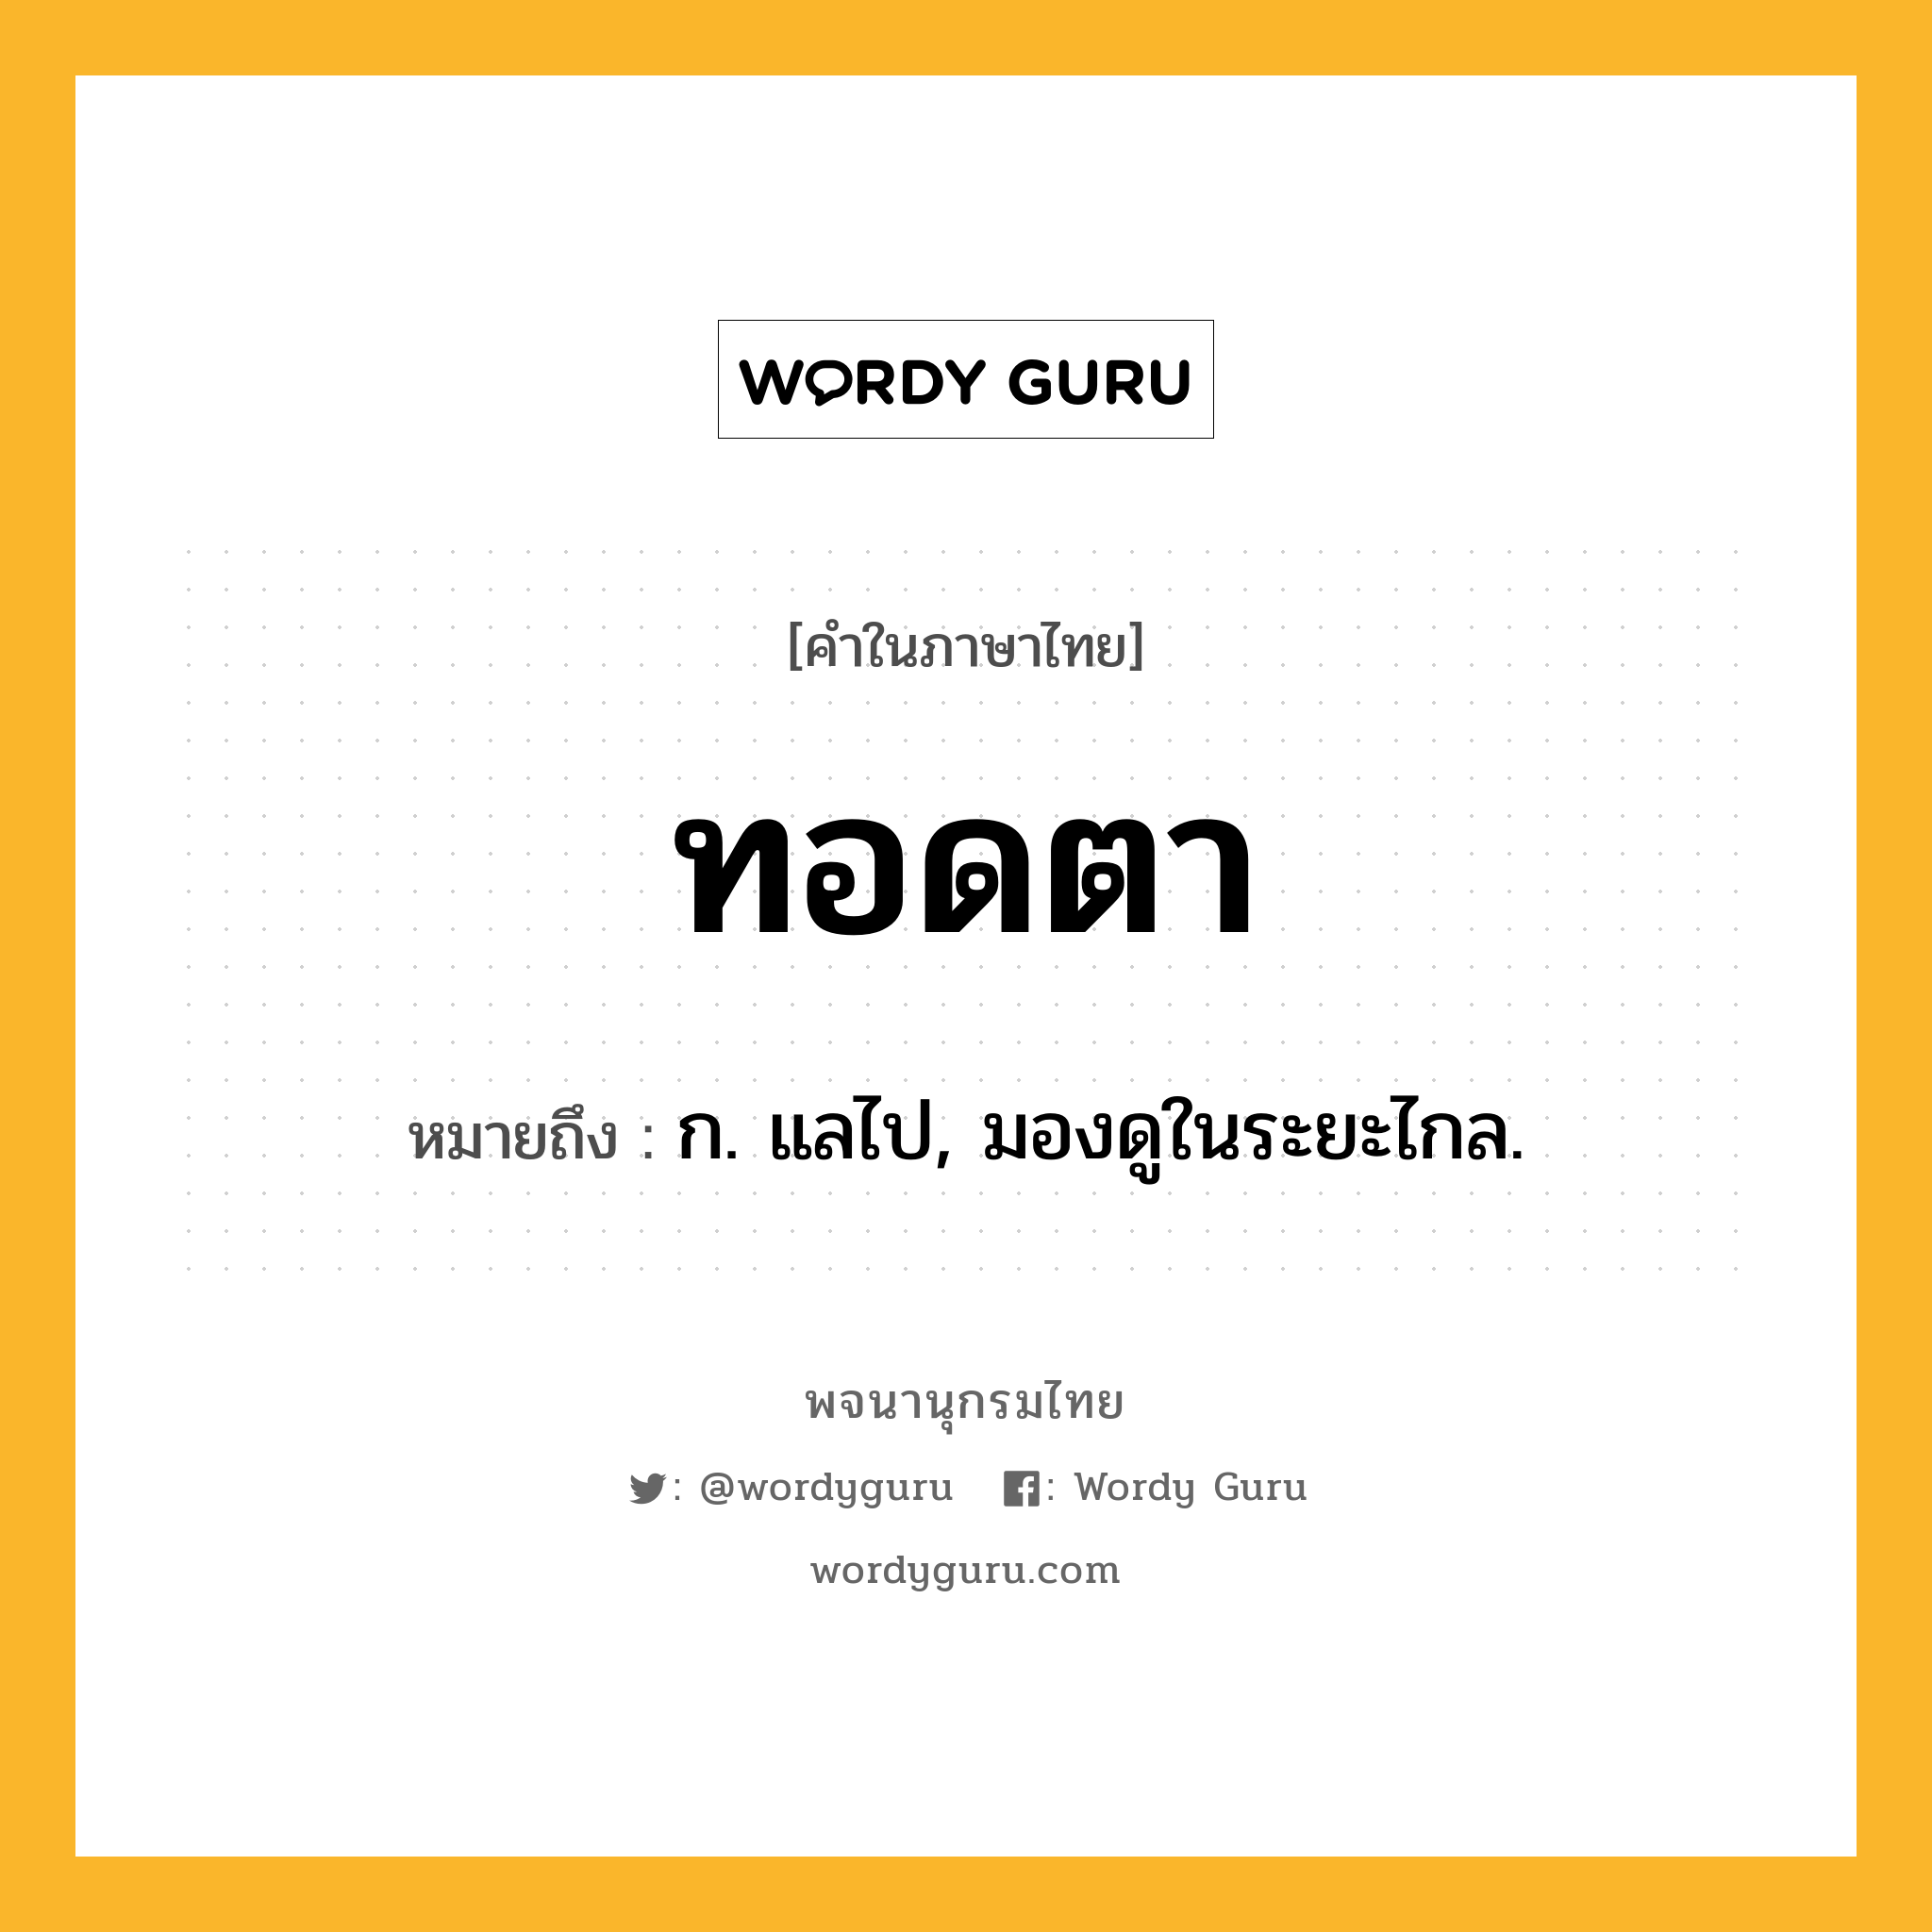 ทอดตา หมายถึงอะไร?, คำในภาษาไทย ทอดตา หมายถึง ก. แลไป, มองดูในระยะไกล.